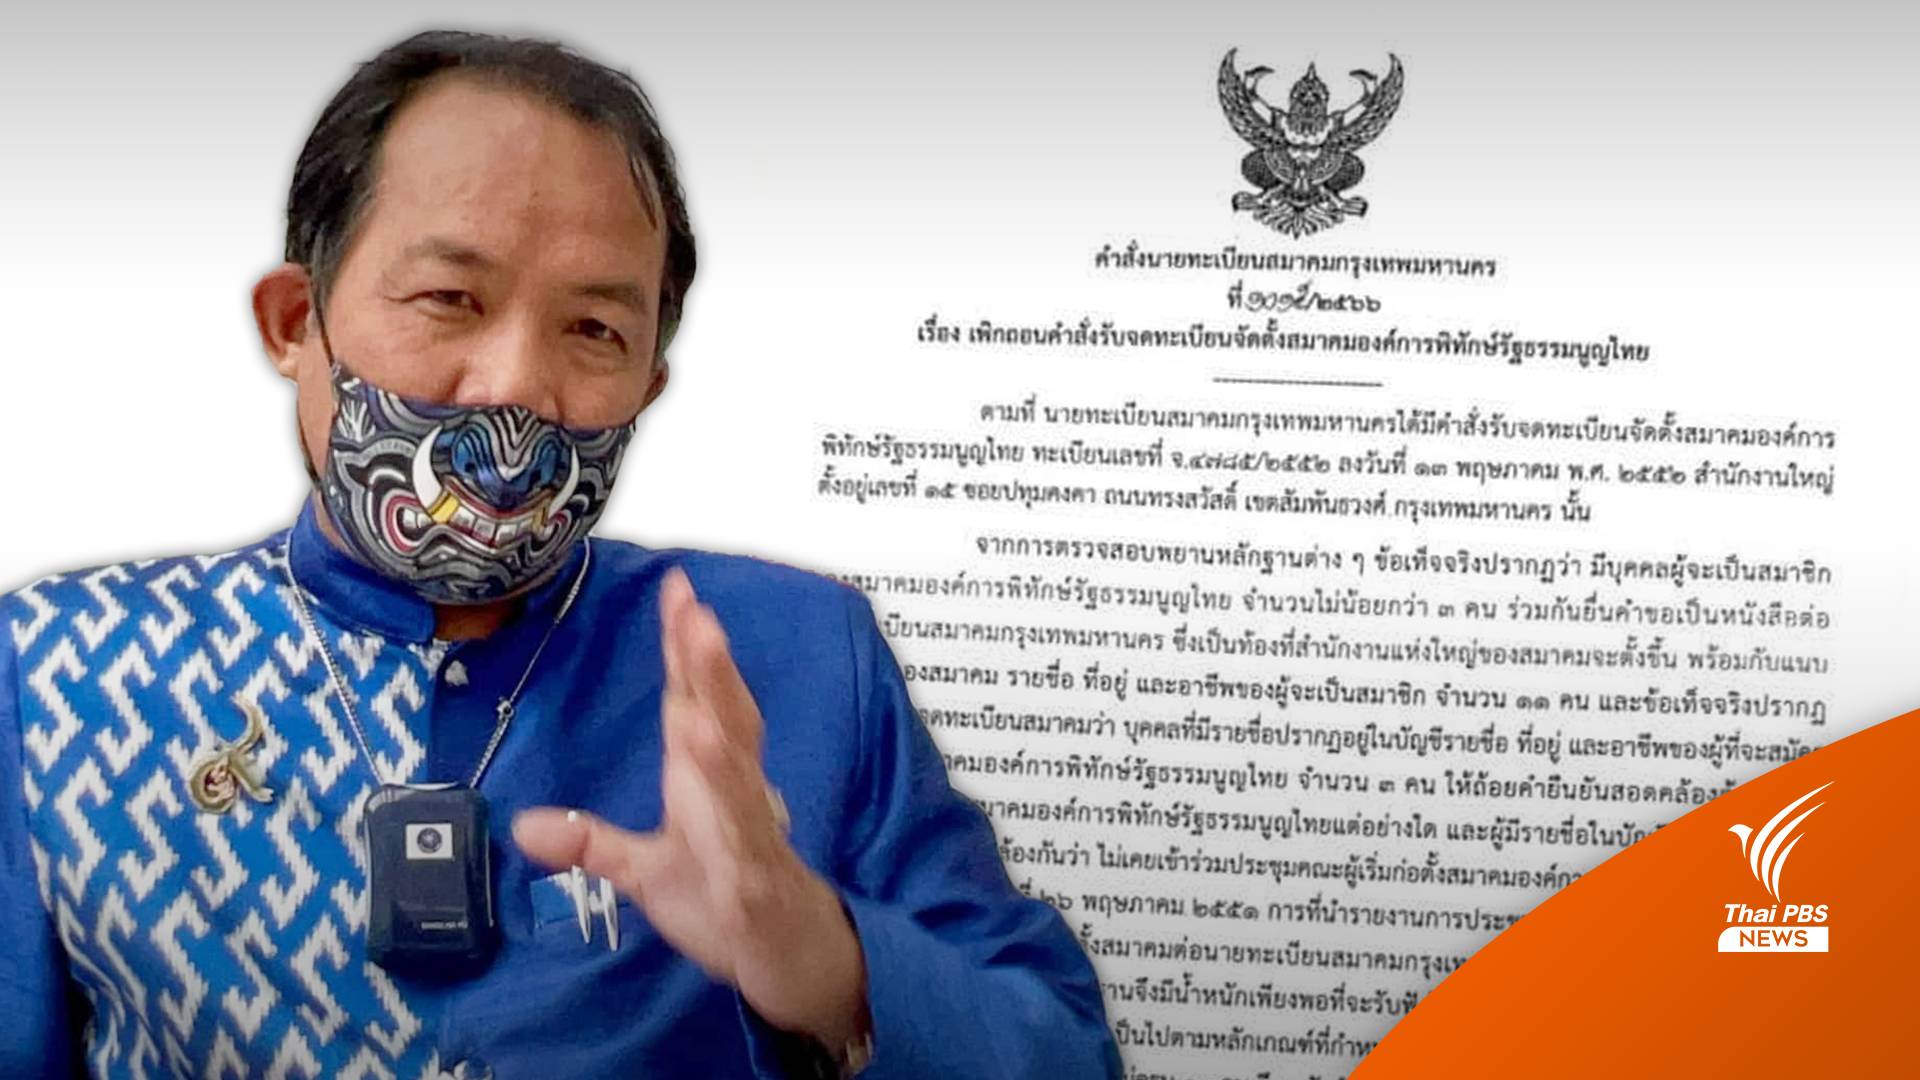 สั่งยุบ "สมาคมองค์การพิทักษ์รัฐธรรมนูญไทย" ของ "ศรีสุวรรณ"